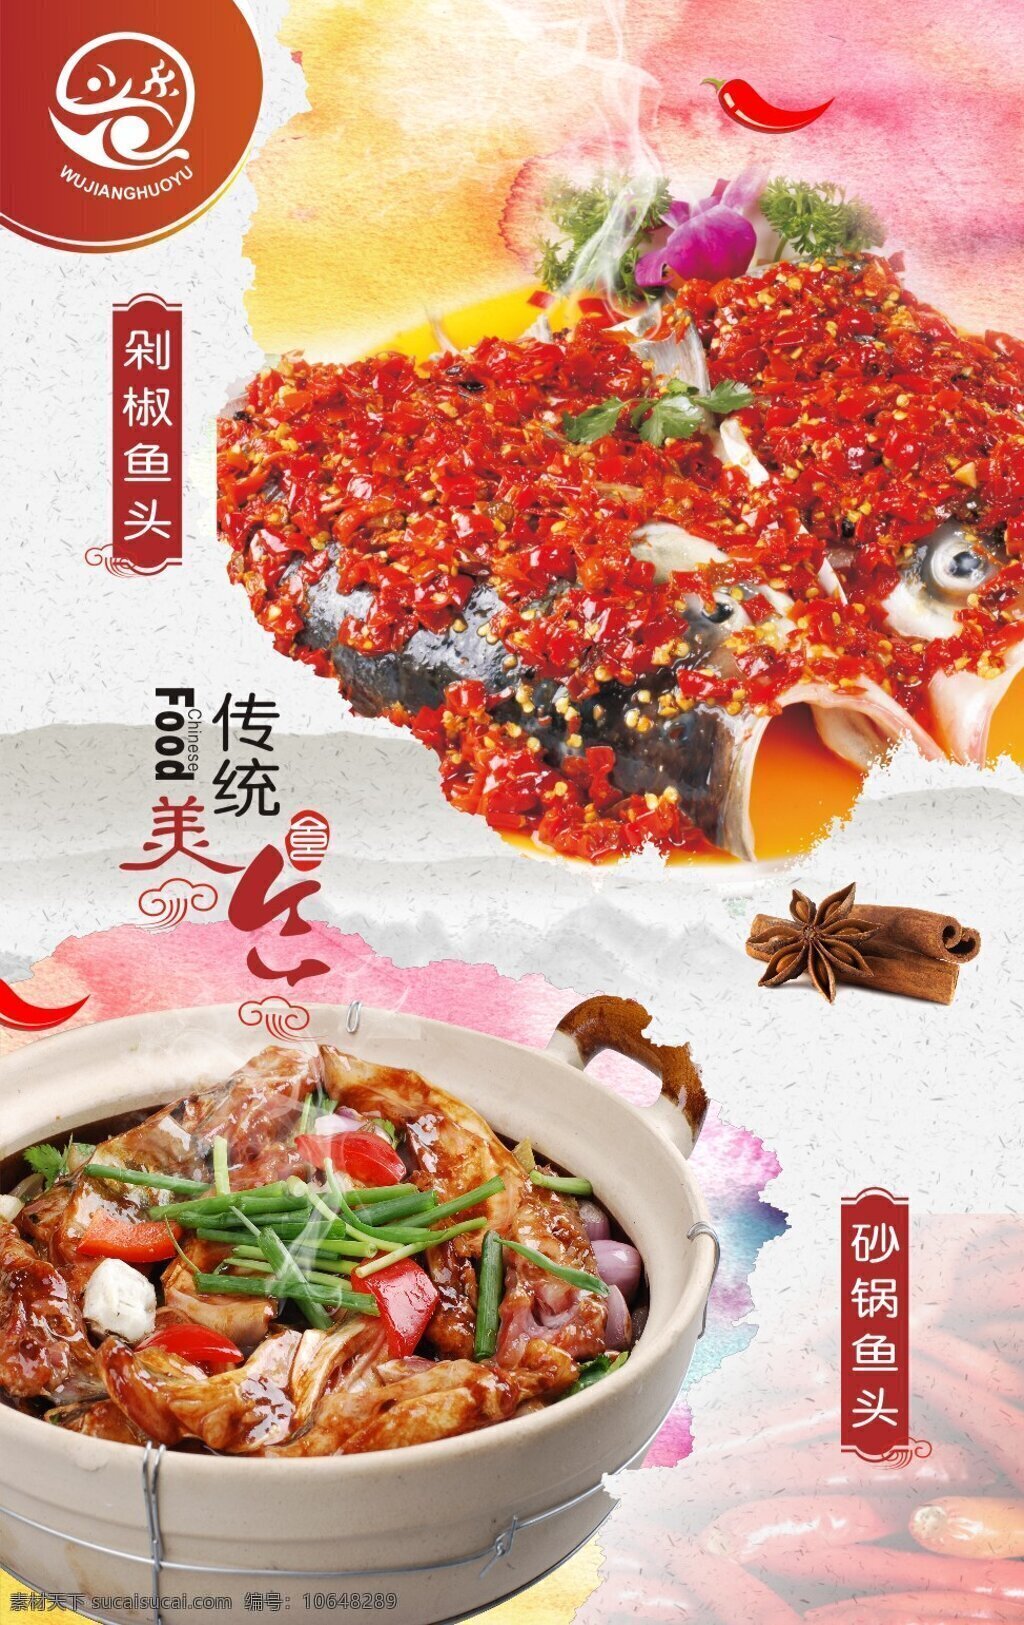 剁椒鱼头 砂锅鱼头 剁椒鱼头海报 美食海报 传统美食 乌江鱼 鱼类海报 中国风美食